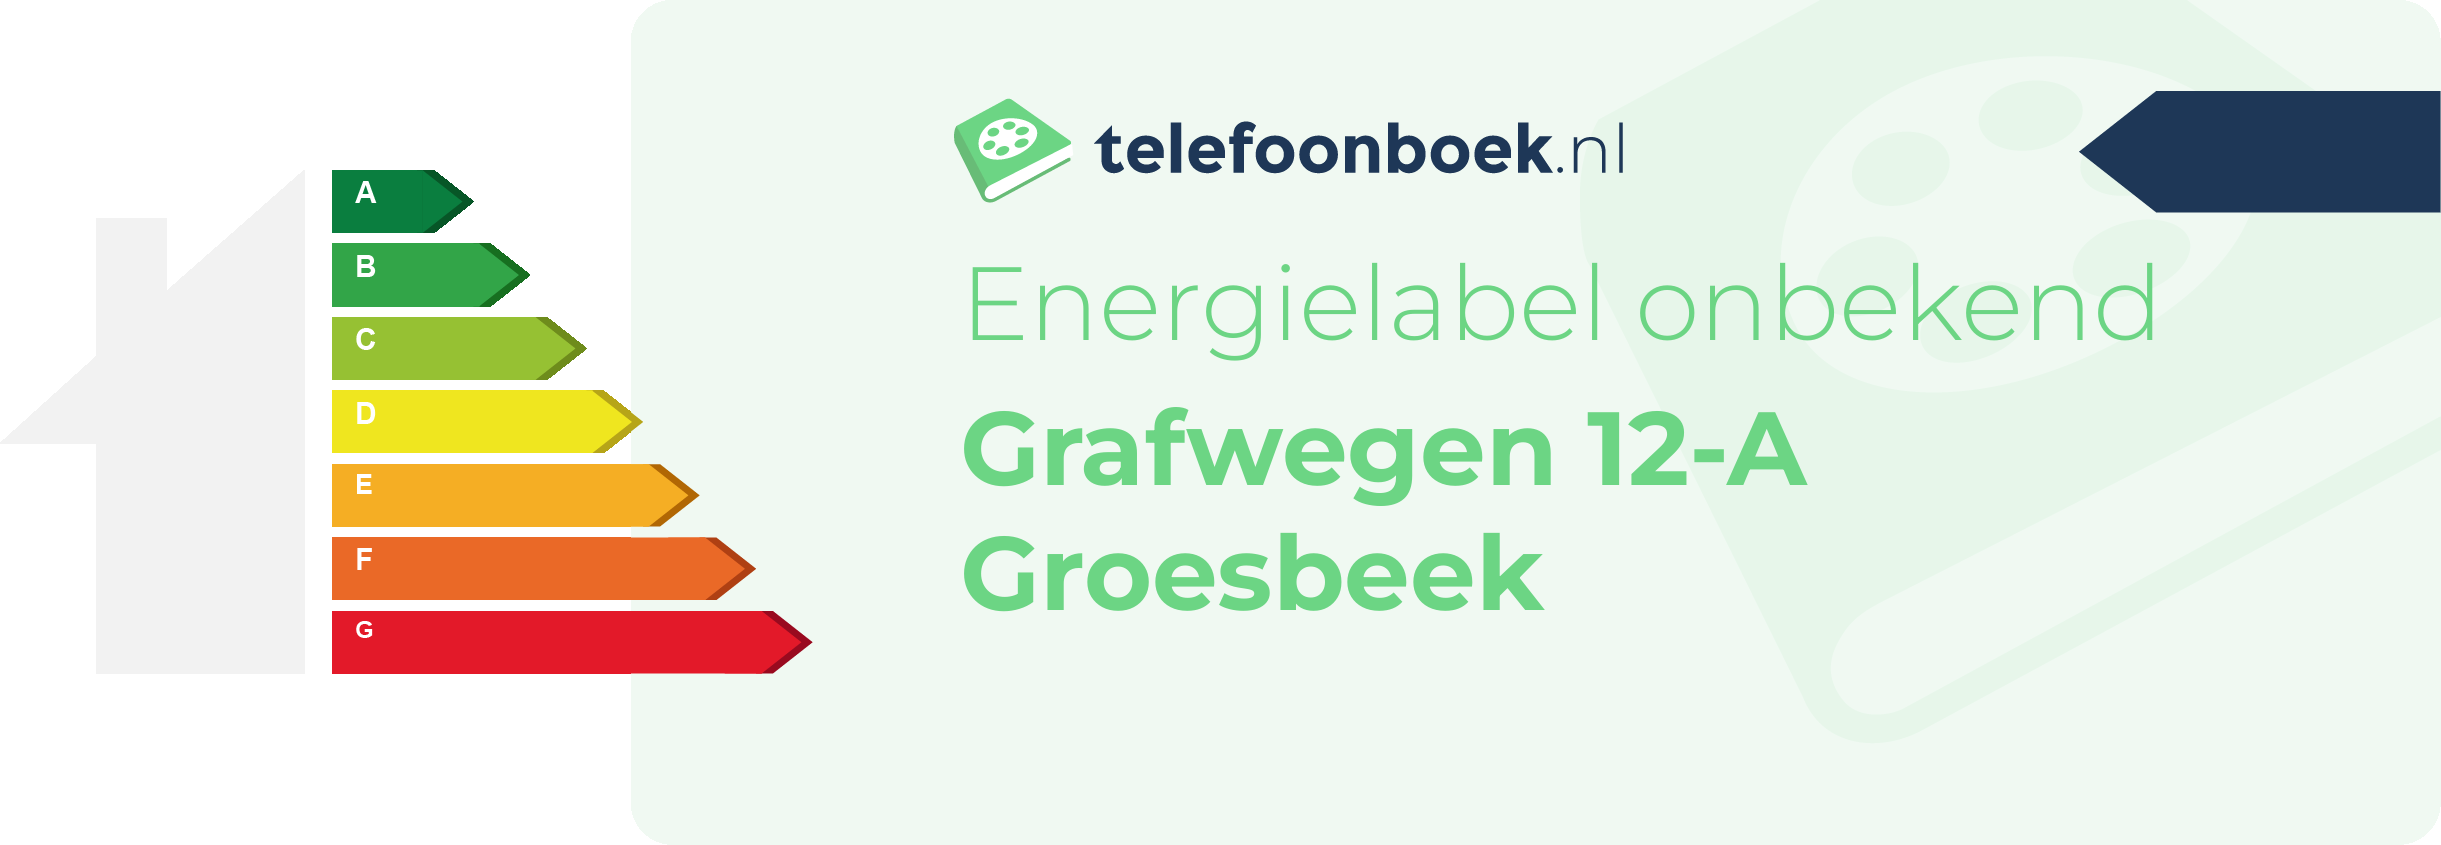 Energielabel Grafwegen 12-A Groesbeek